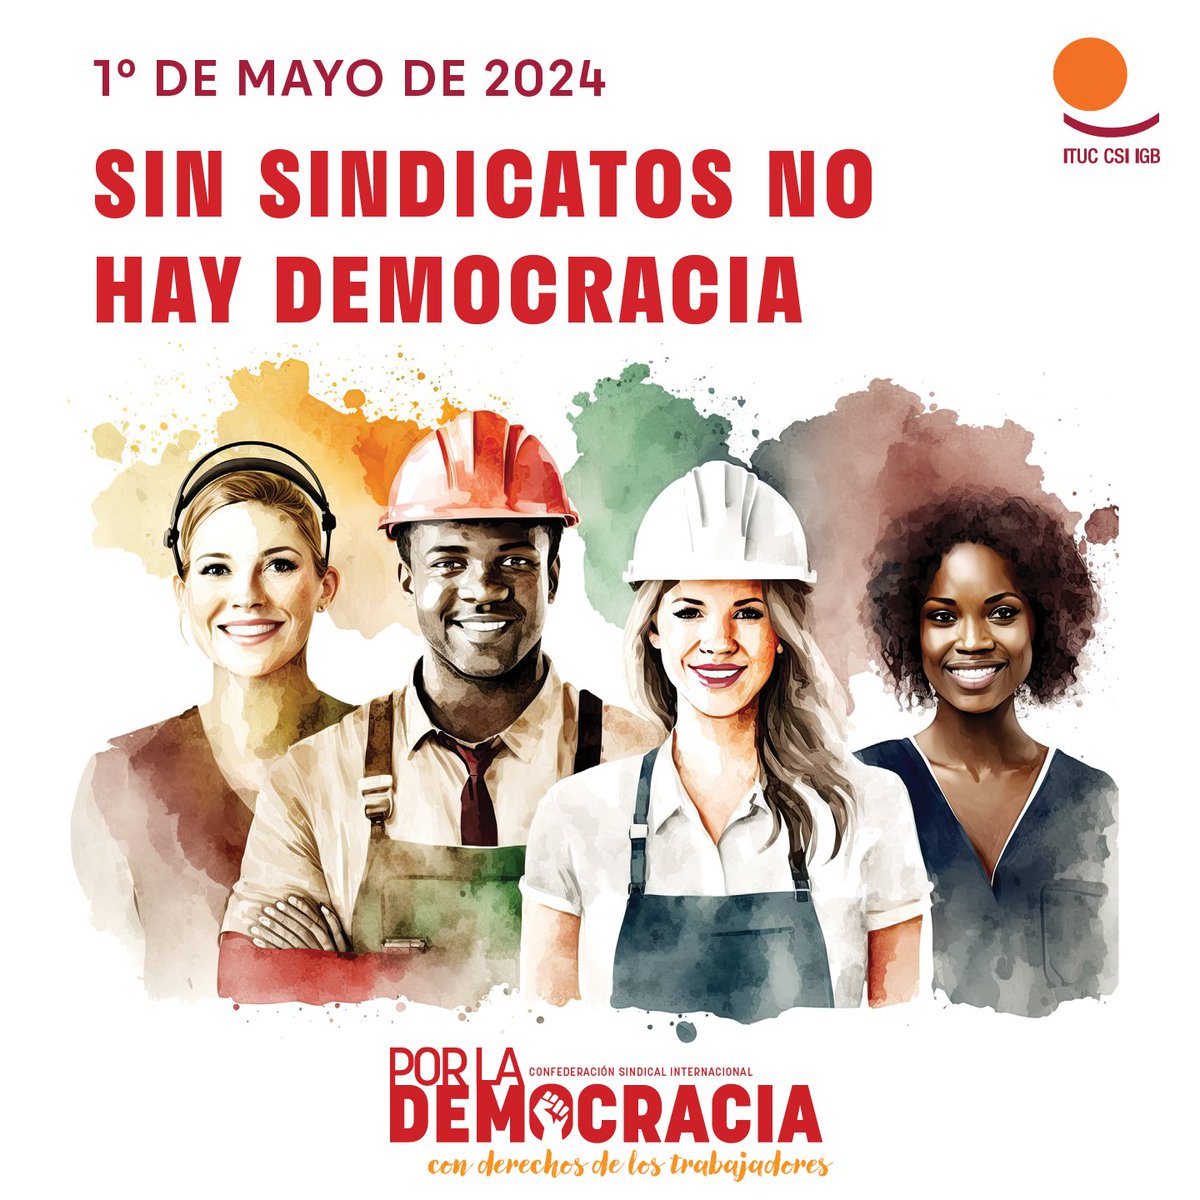 📢¡Sin sindicatos no hay DEMOCRACIA! 📷#PorLaDemocracia con derechos de los trabajadores y las trabajadoras @CCOO por el #PlenoEmpleo #1Mayo2024 @ituc #ForDemocracy #MayDay2024